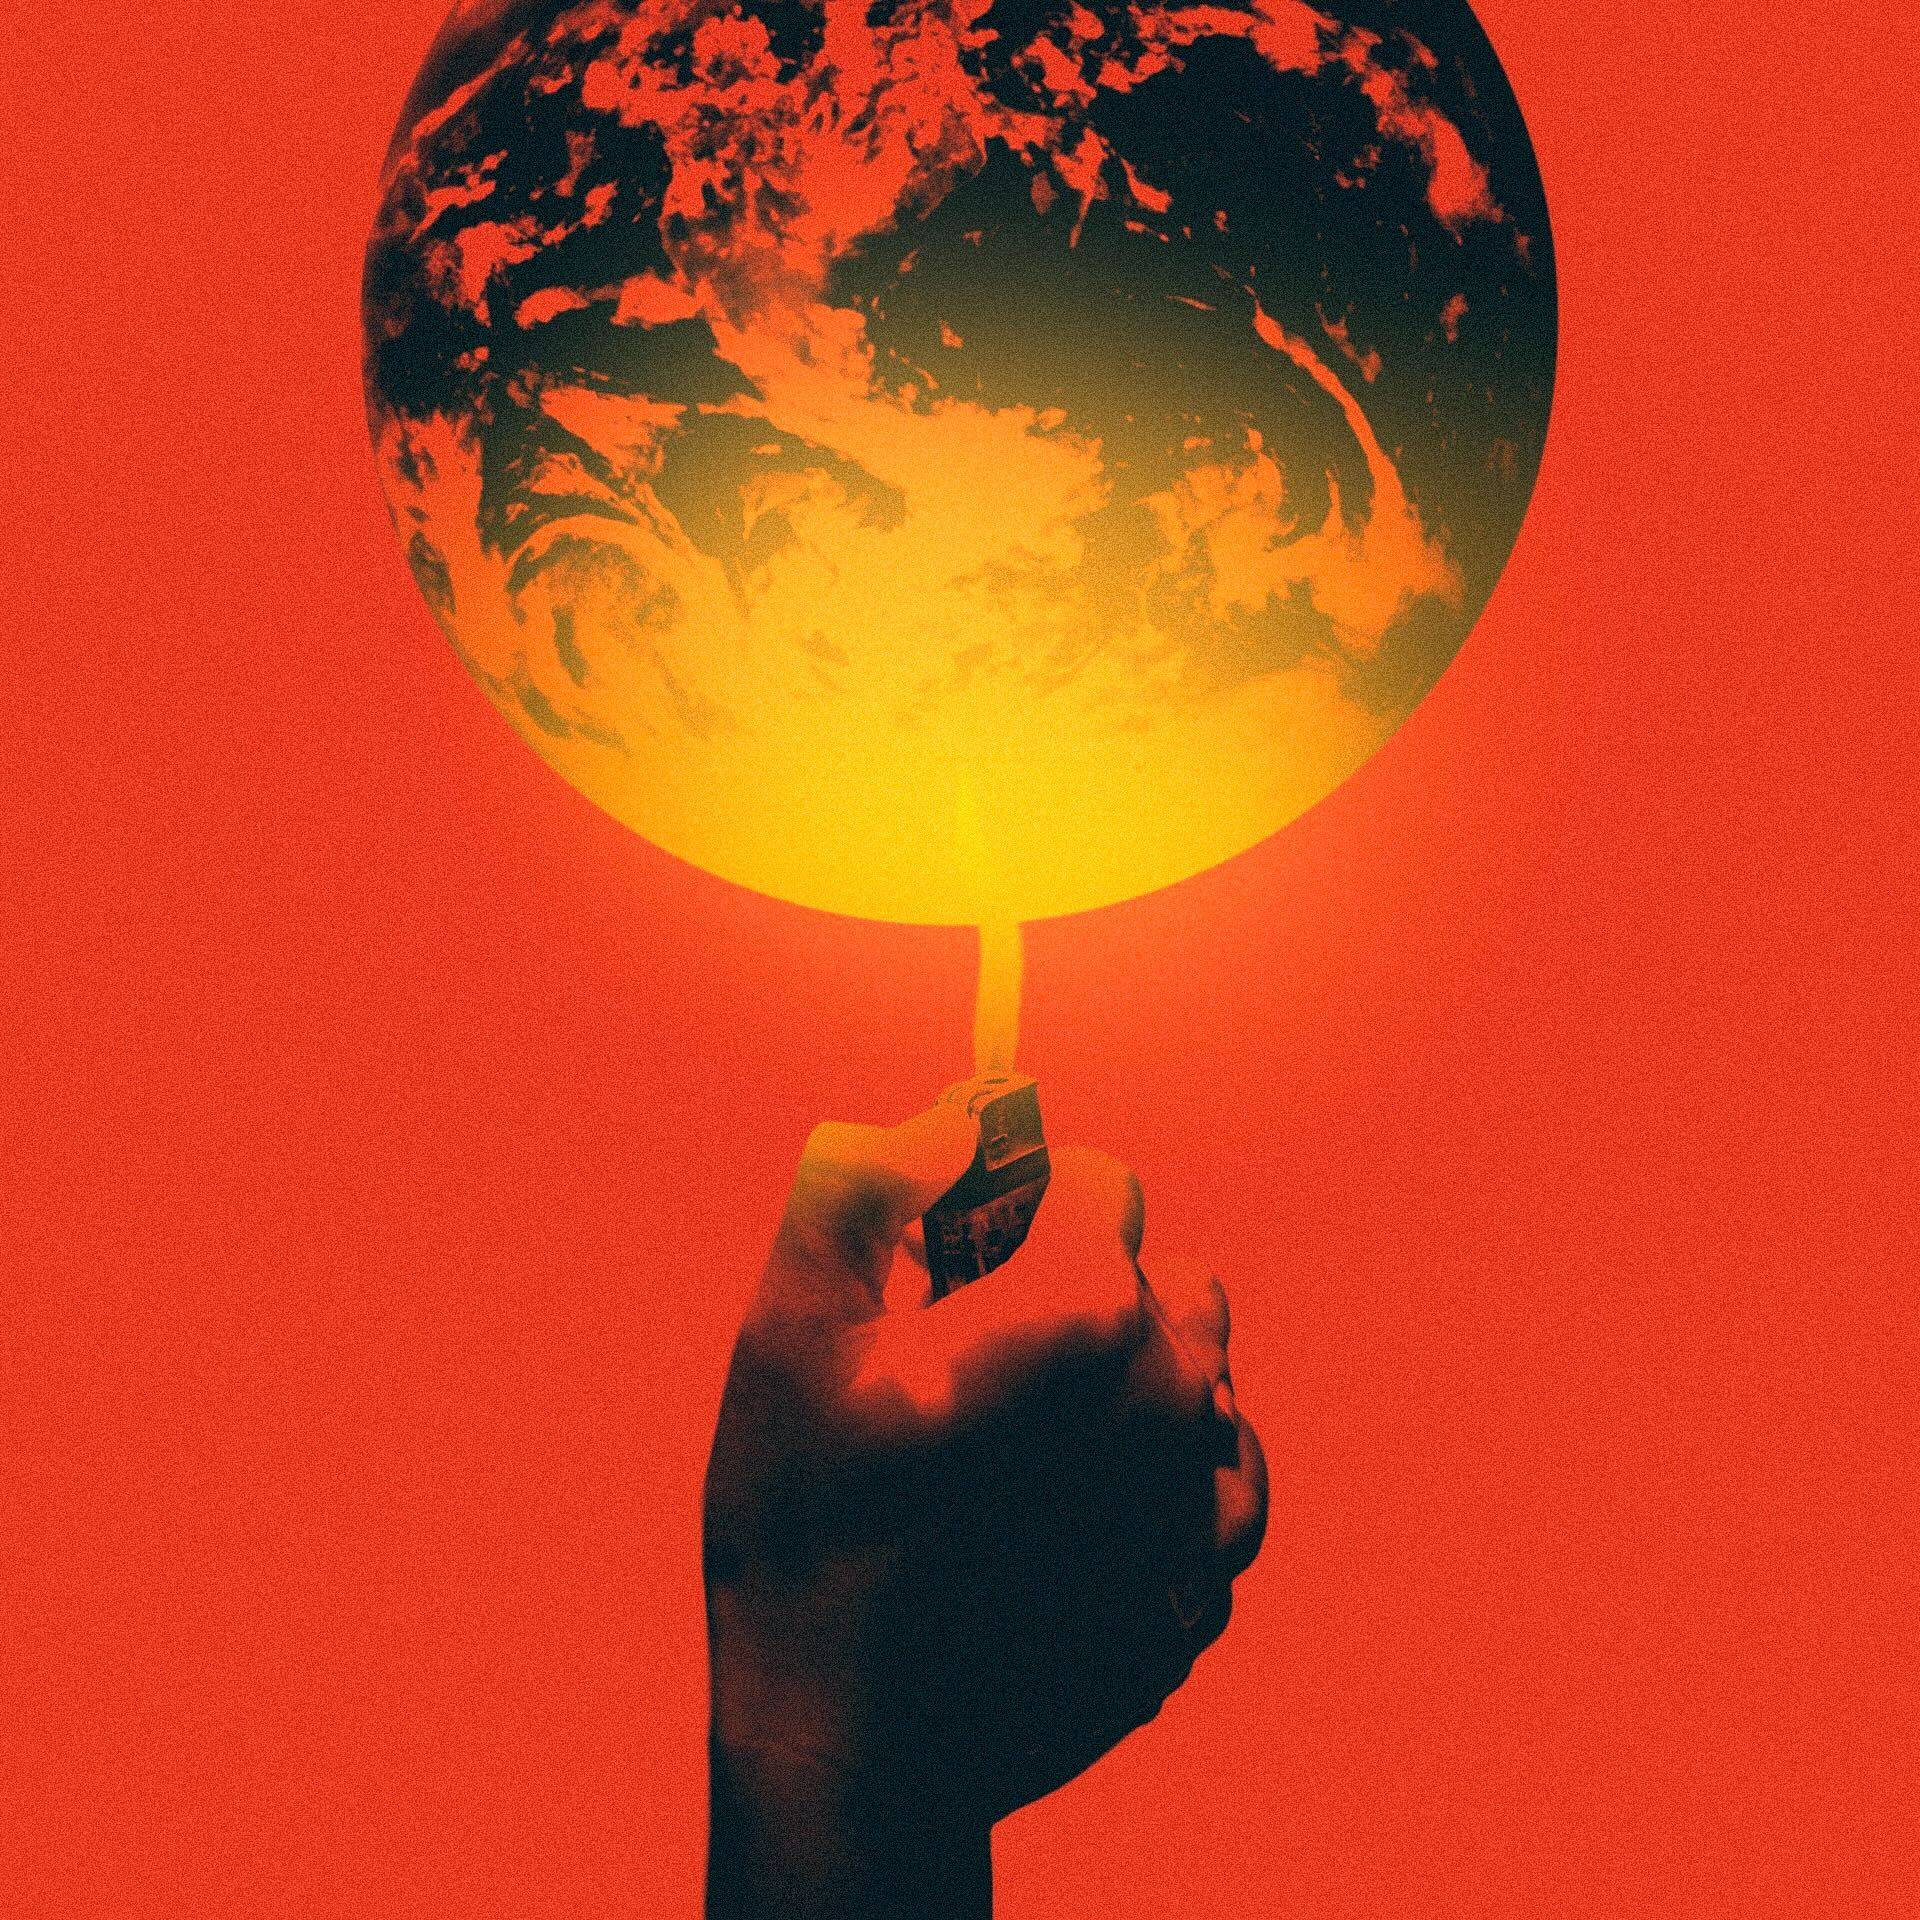 Ilustracja przedstawia glob ziemski na czerwonym tle i rkę z zapalniczką, której płomień podgrzewa glob